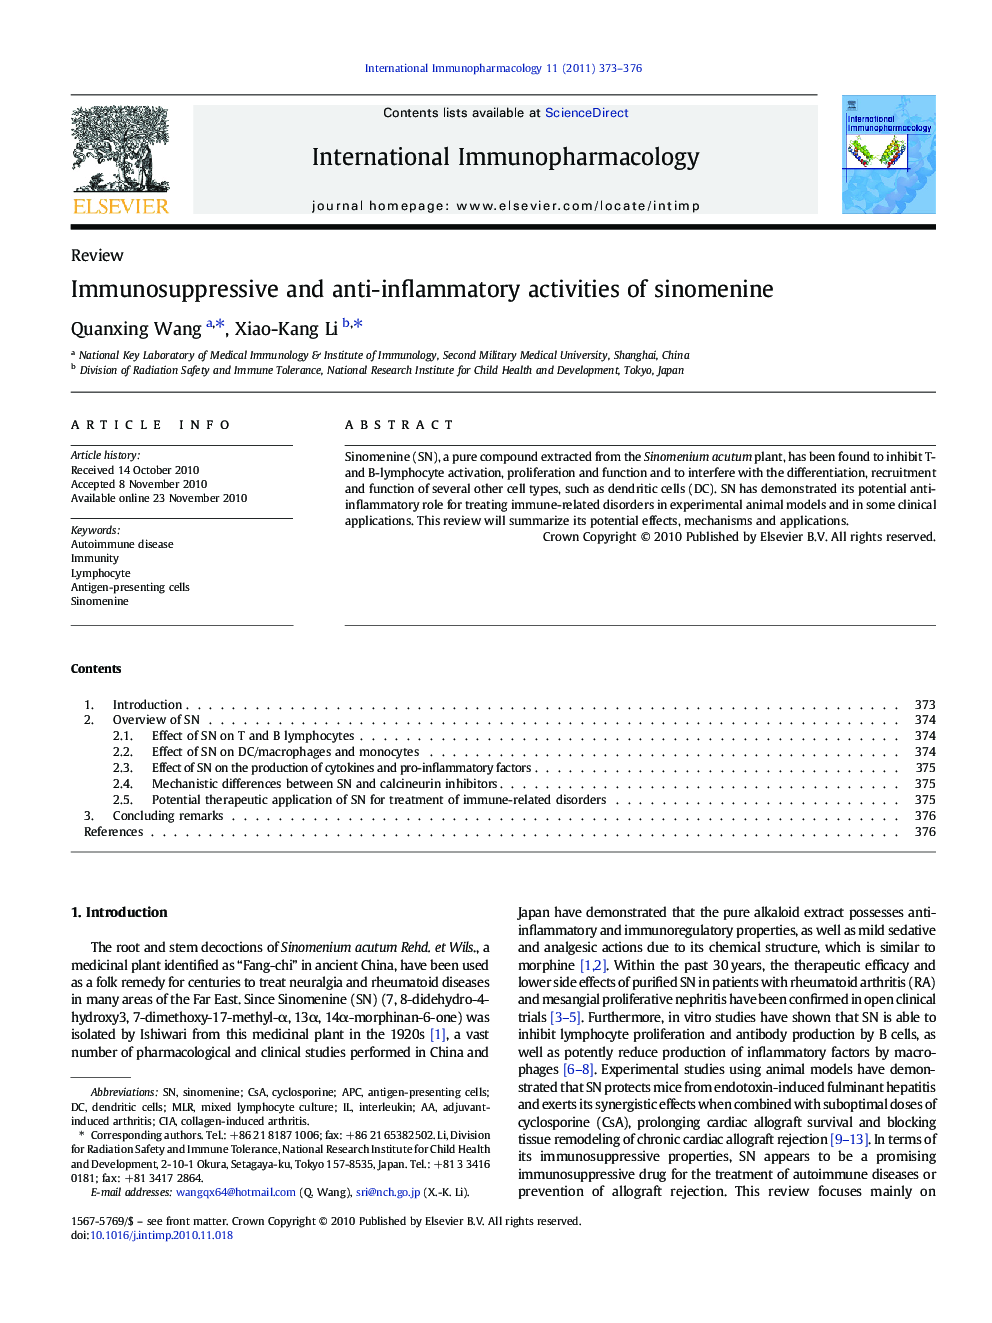 Immunosuppressive and anti-inflammatory activities of sinomenine